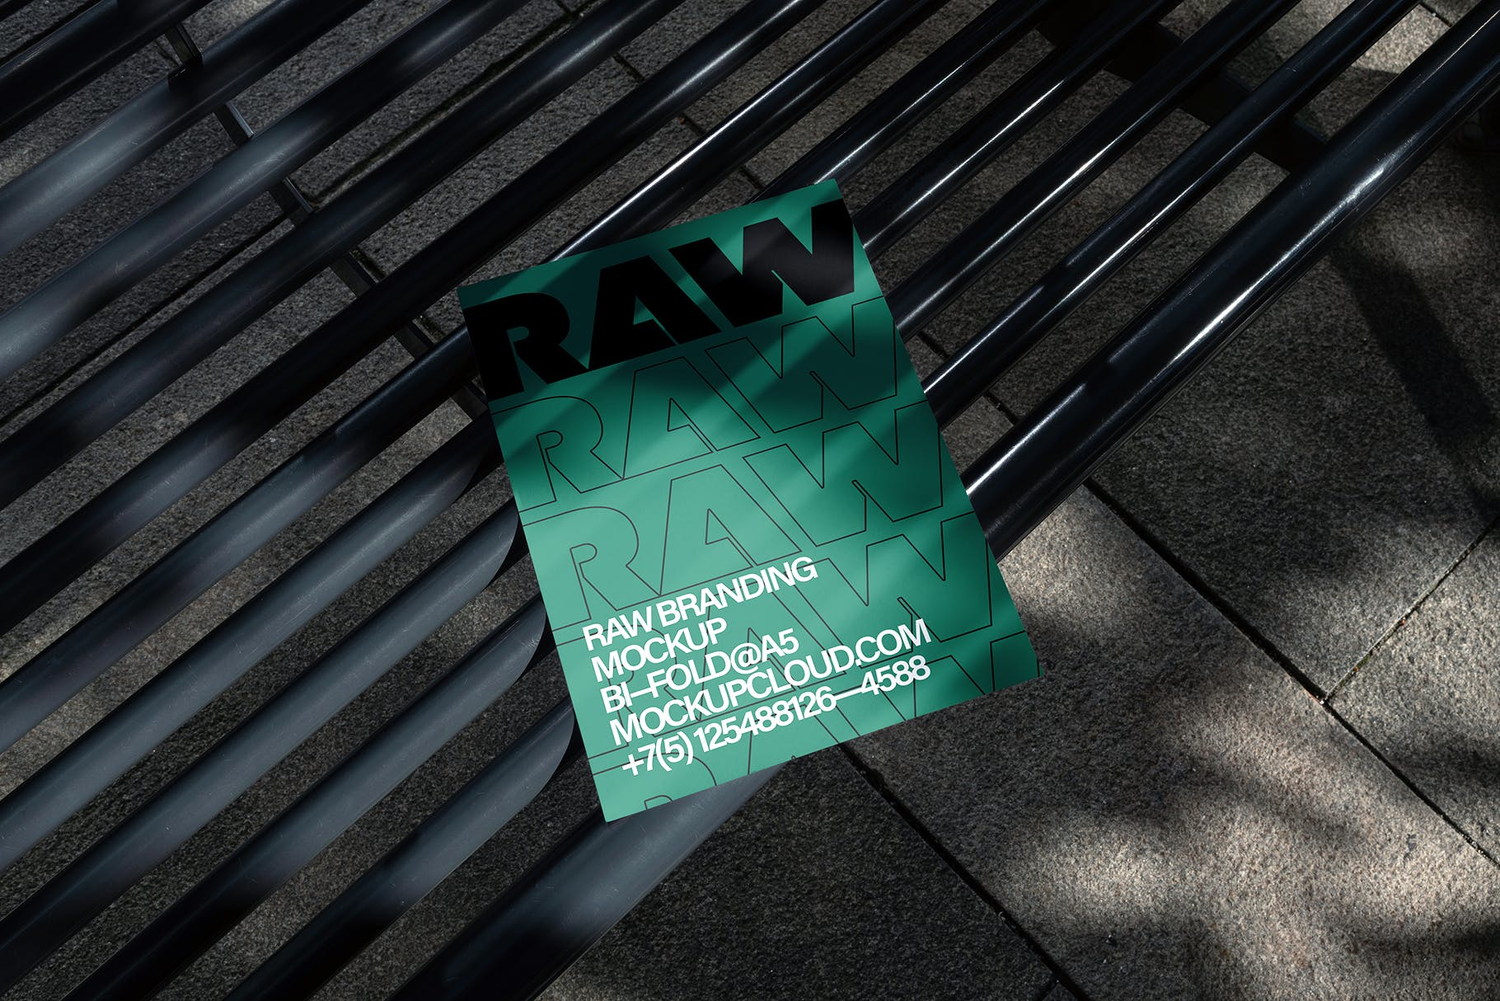 4747 17款质感工业风光影单页海报设计作品贴图PS样机素材场景展示模板 Raw Posters Mockups Vol 2@GOOODME.COM